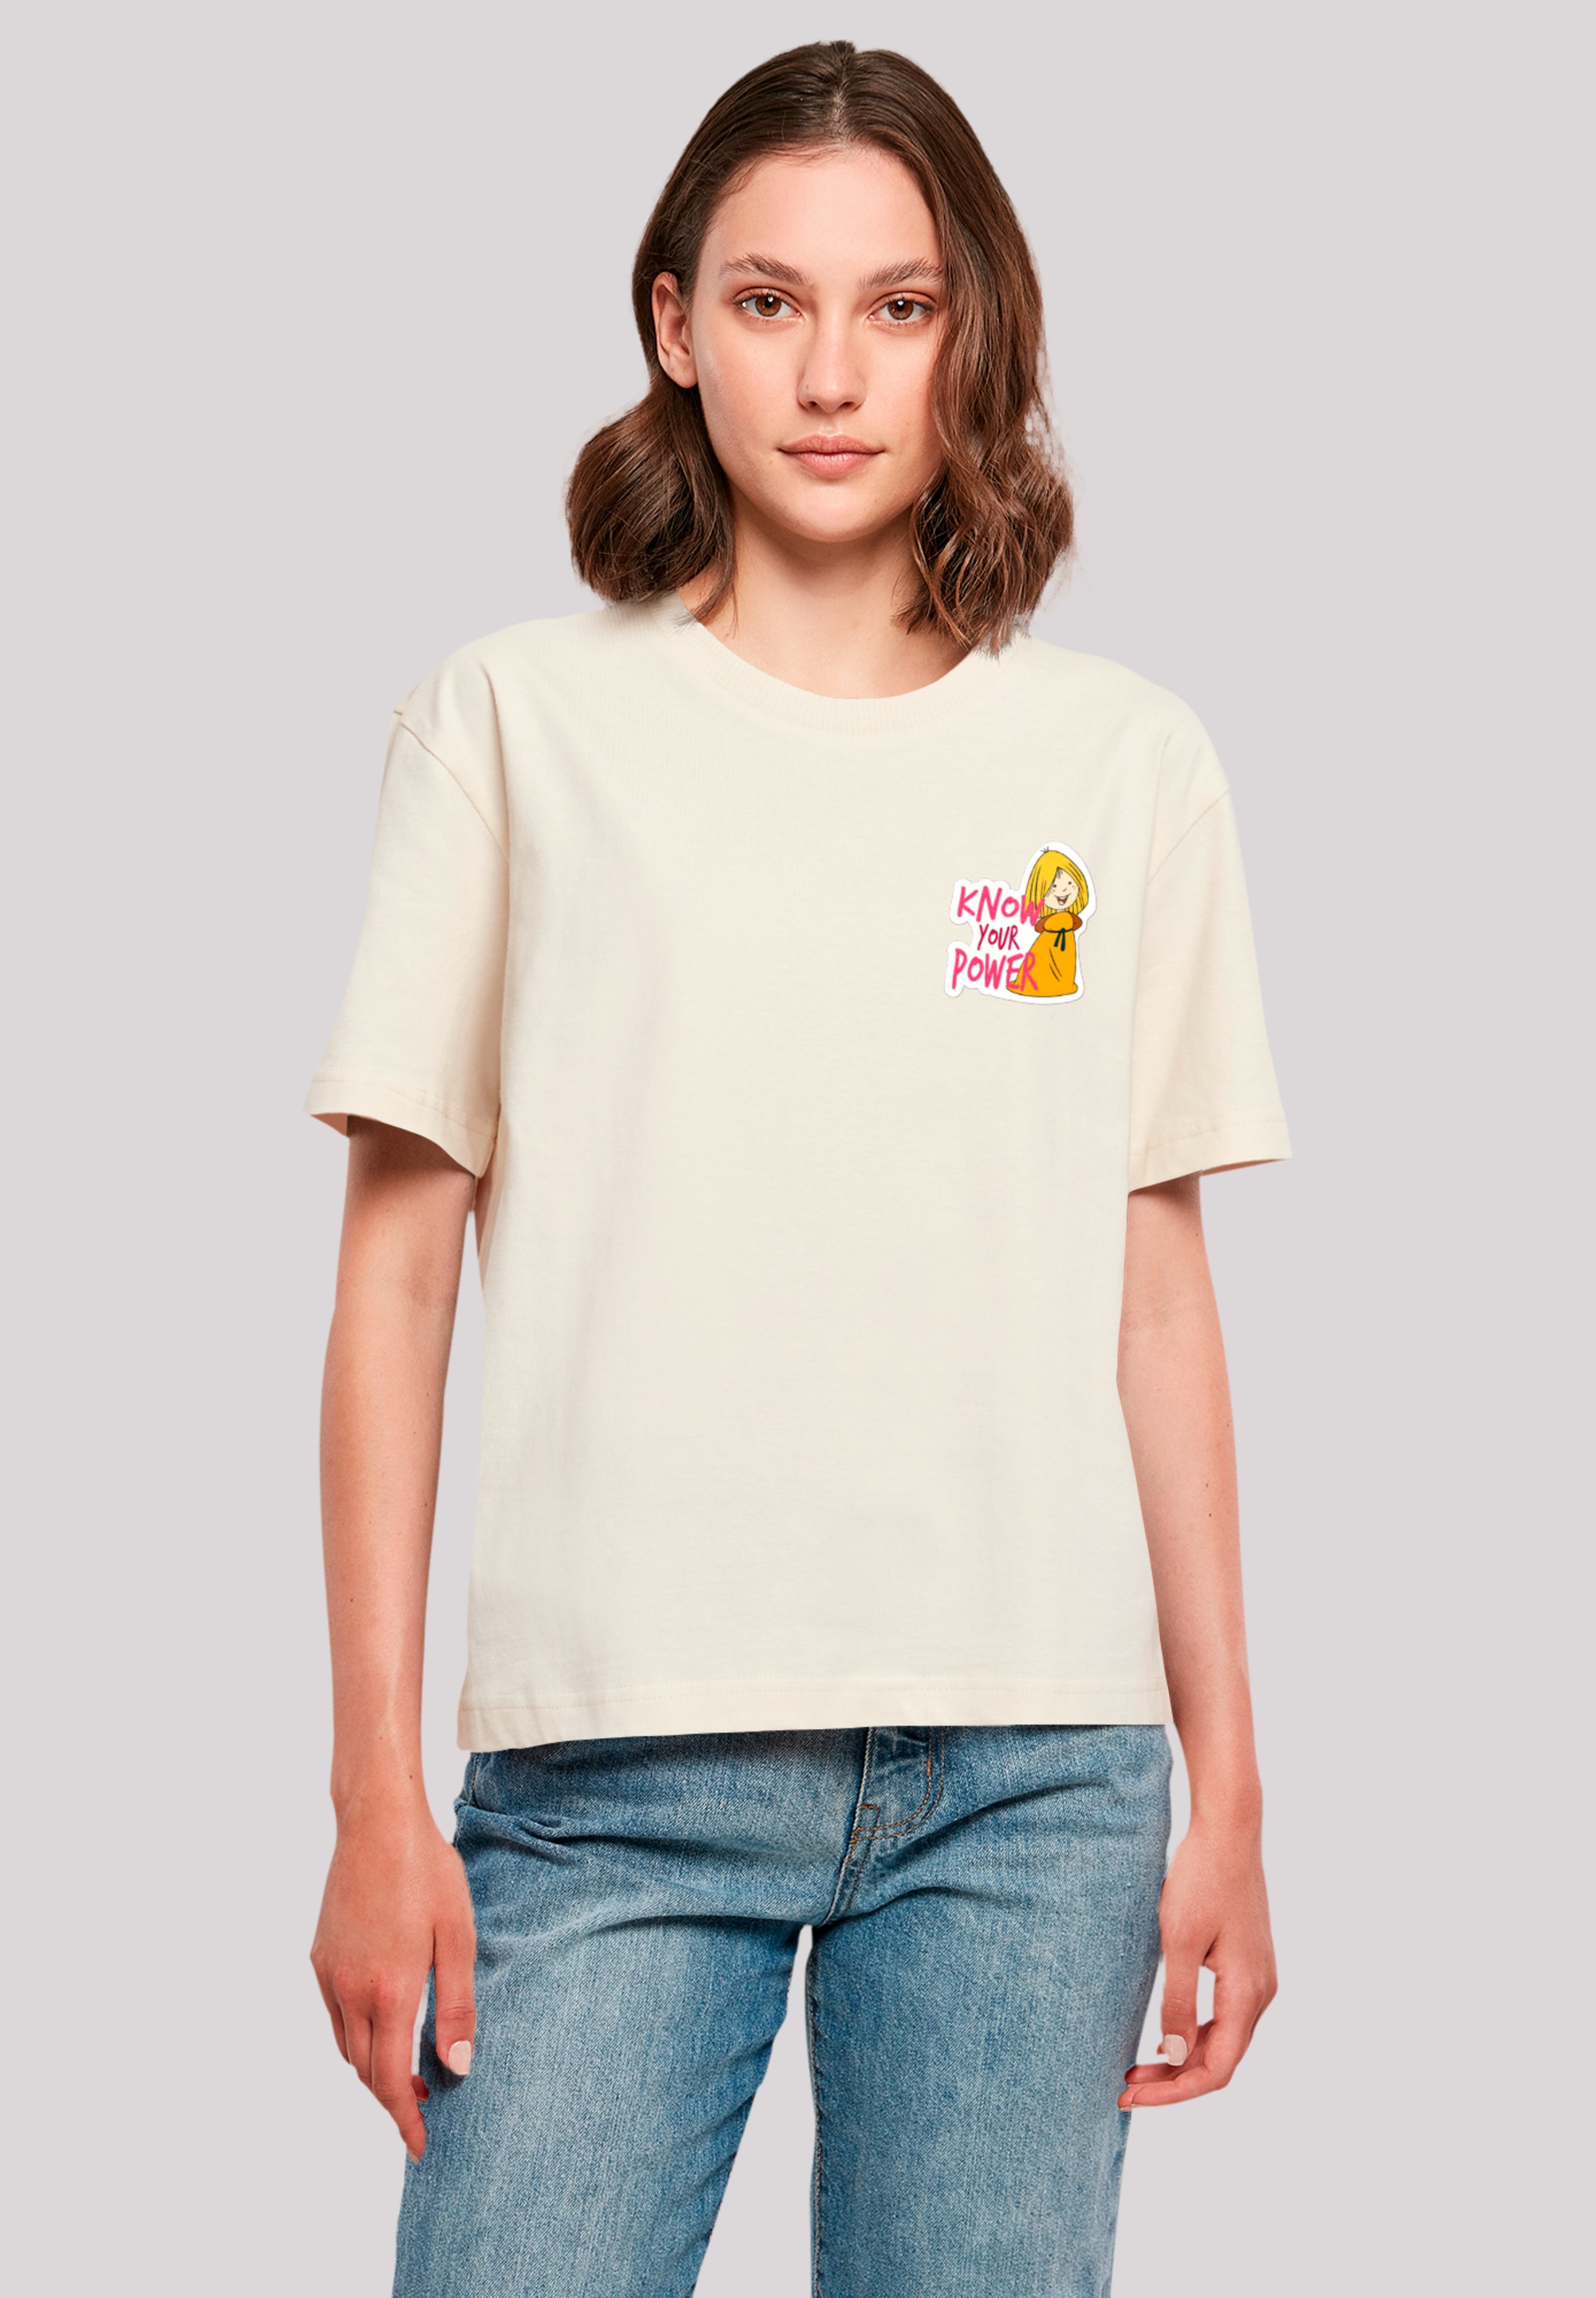 T-Shirt »Wickie Know Your Power«, Nostalgie, Retro Print, Kinderserie